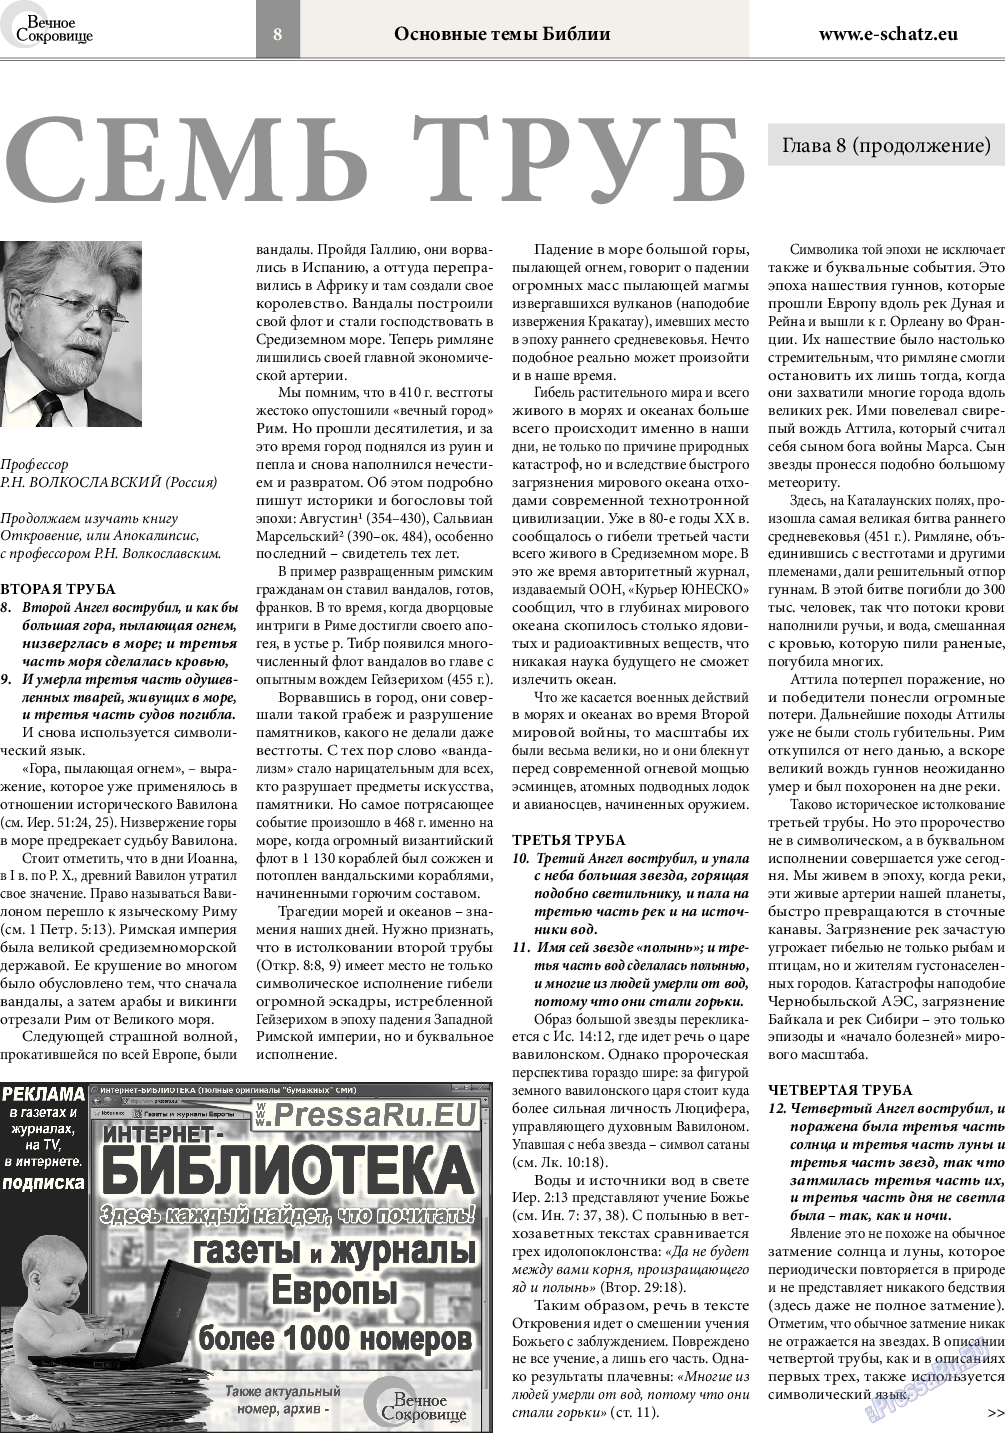 Вечное сокровище, газета. 2015 №3 стр.8